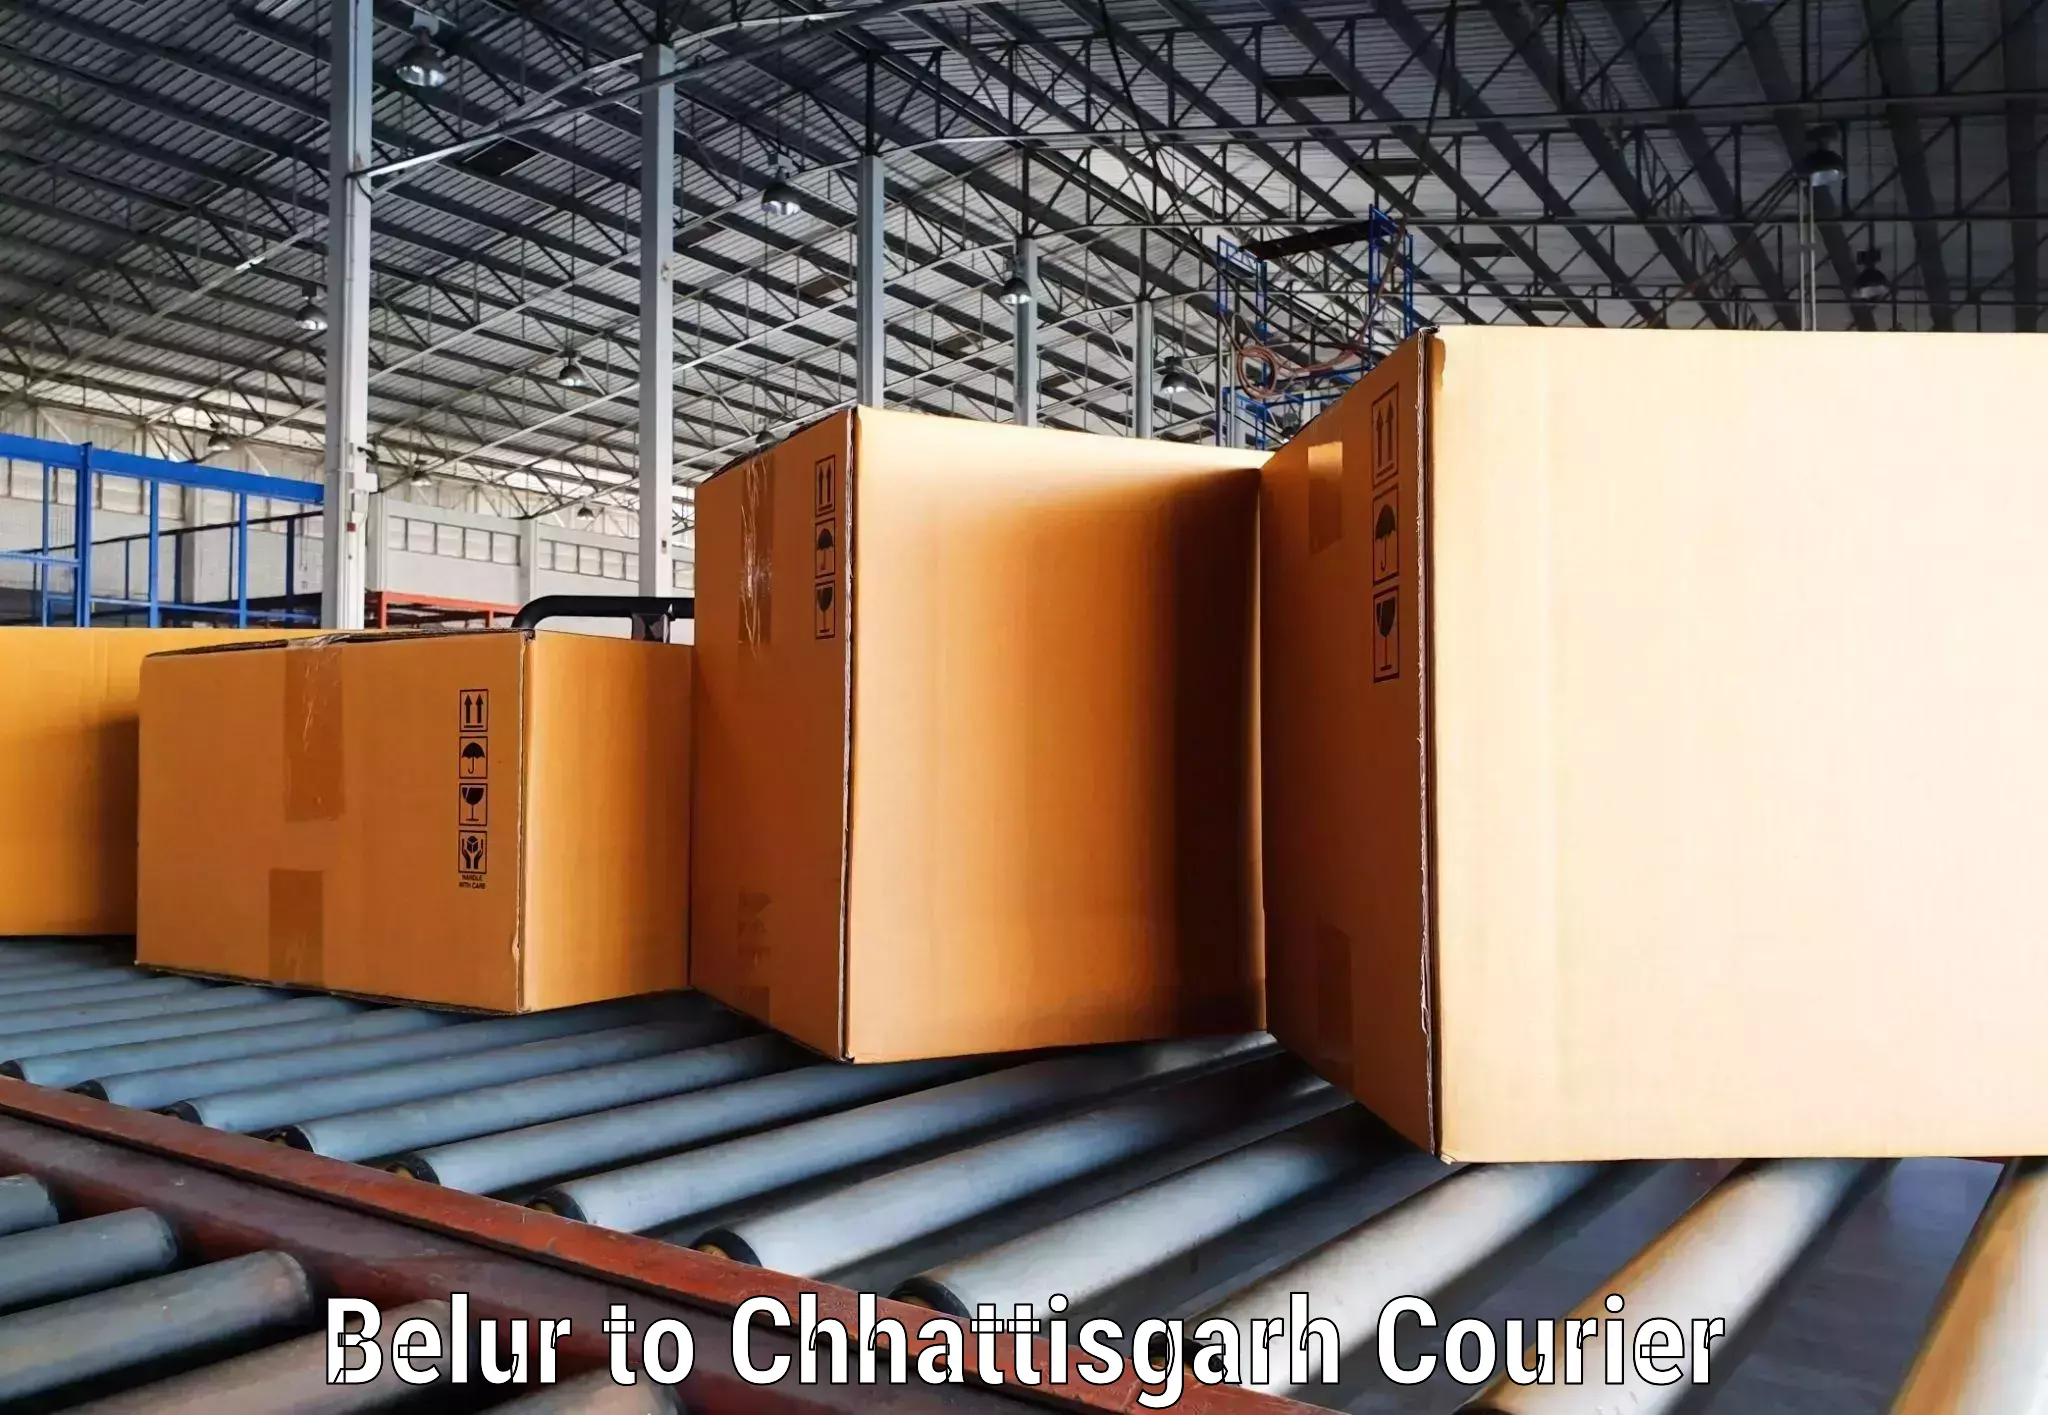 Courier service booking Belur to Chhattisgarh